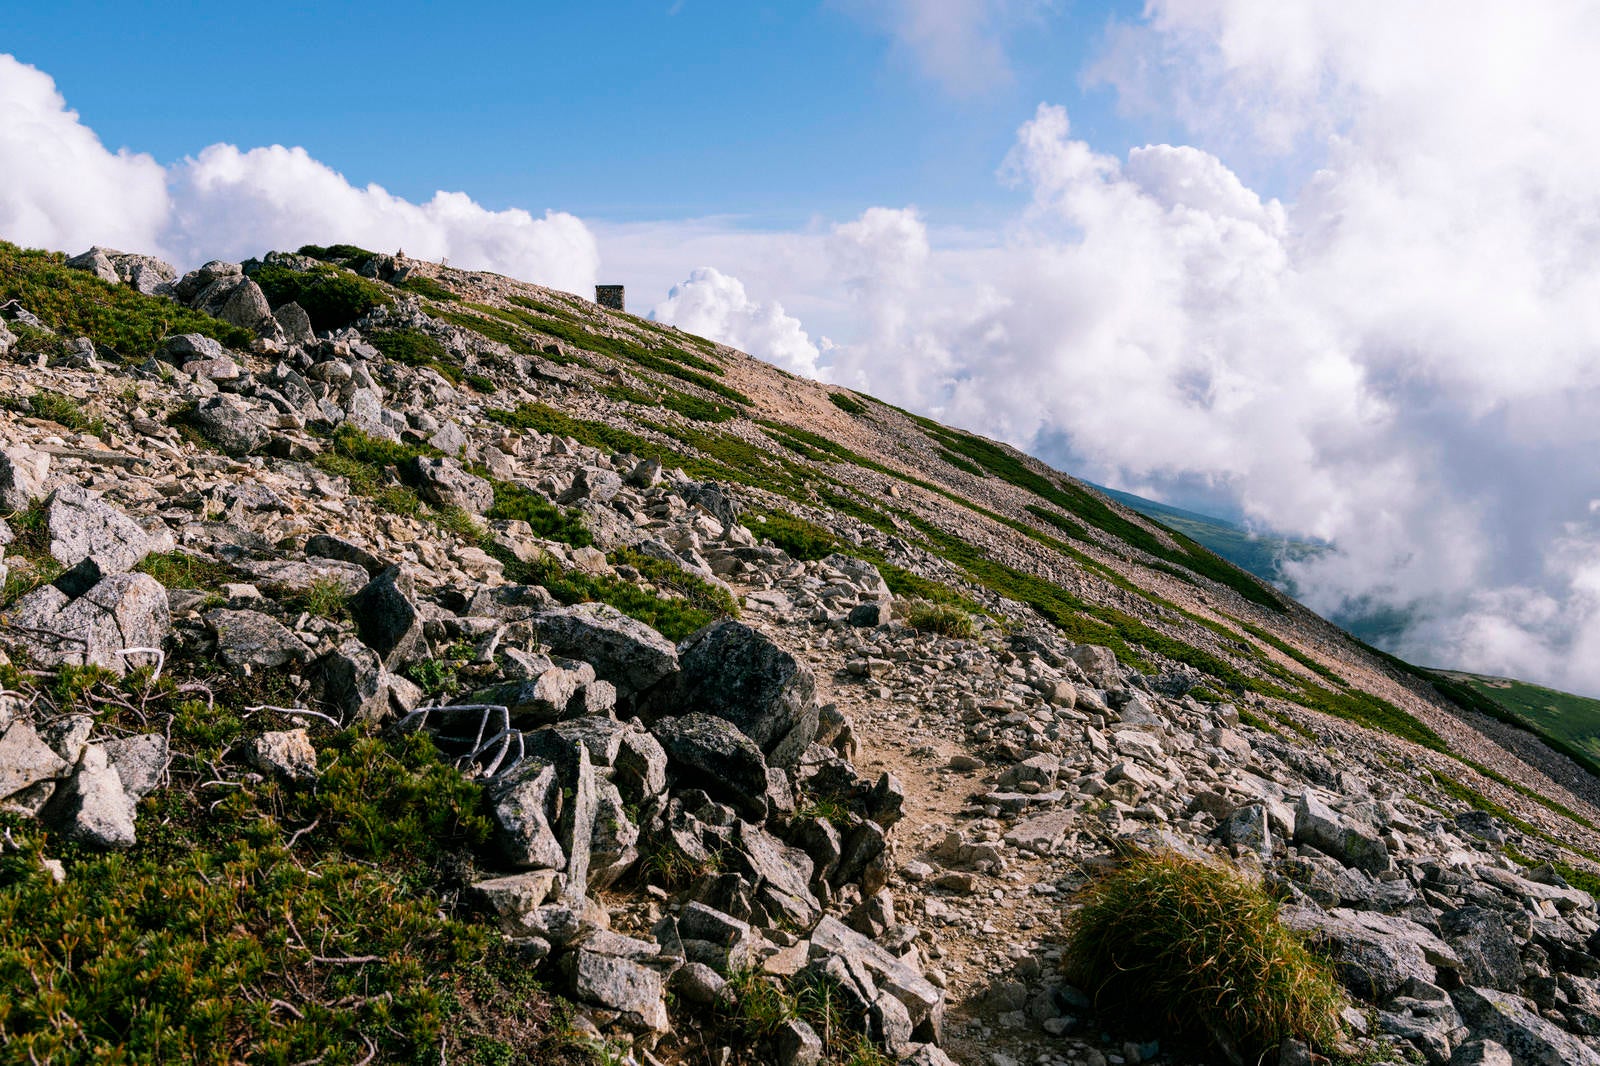 「薬師岳山頂稜線の景色」の写真